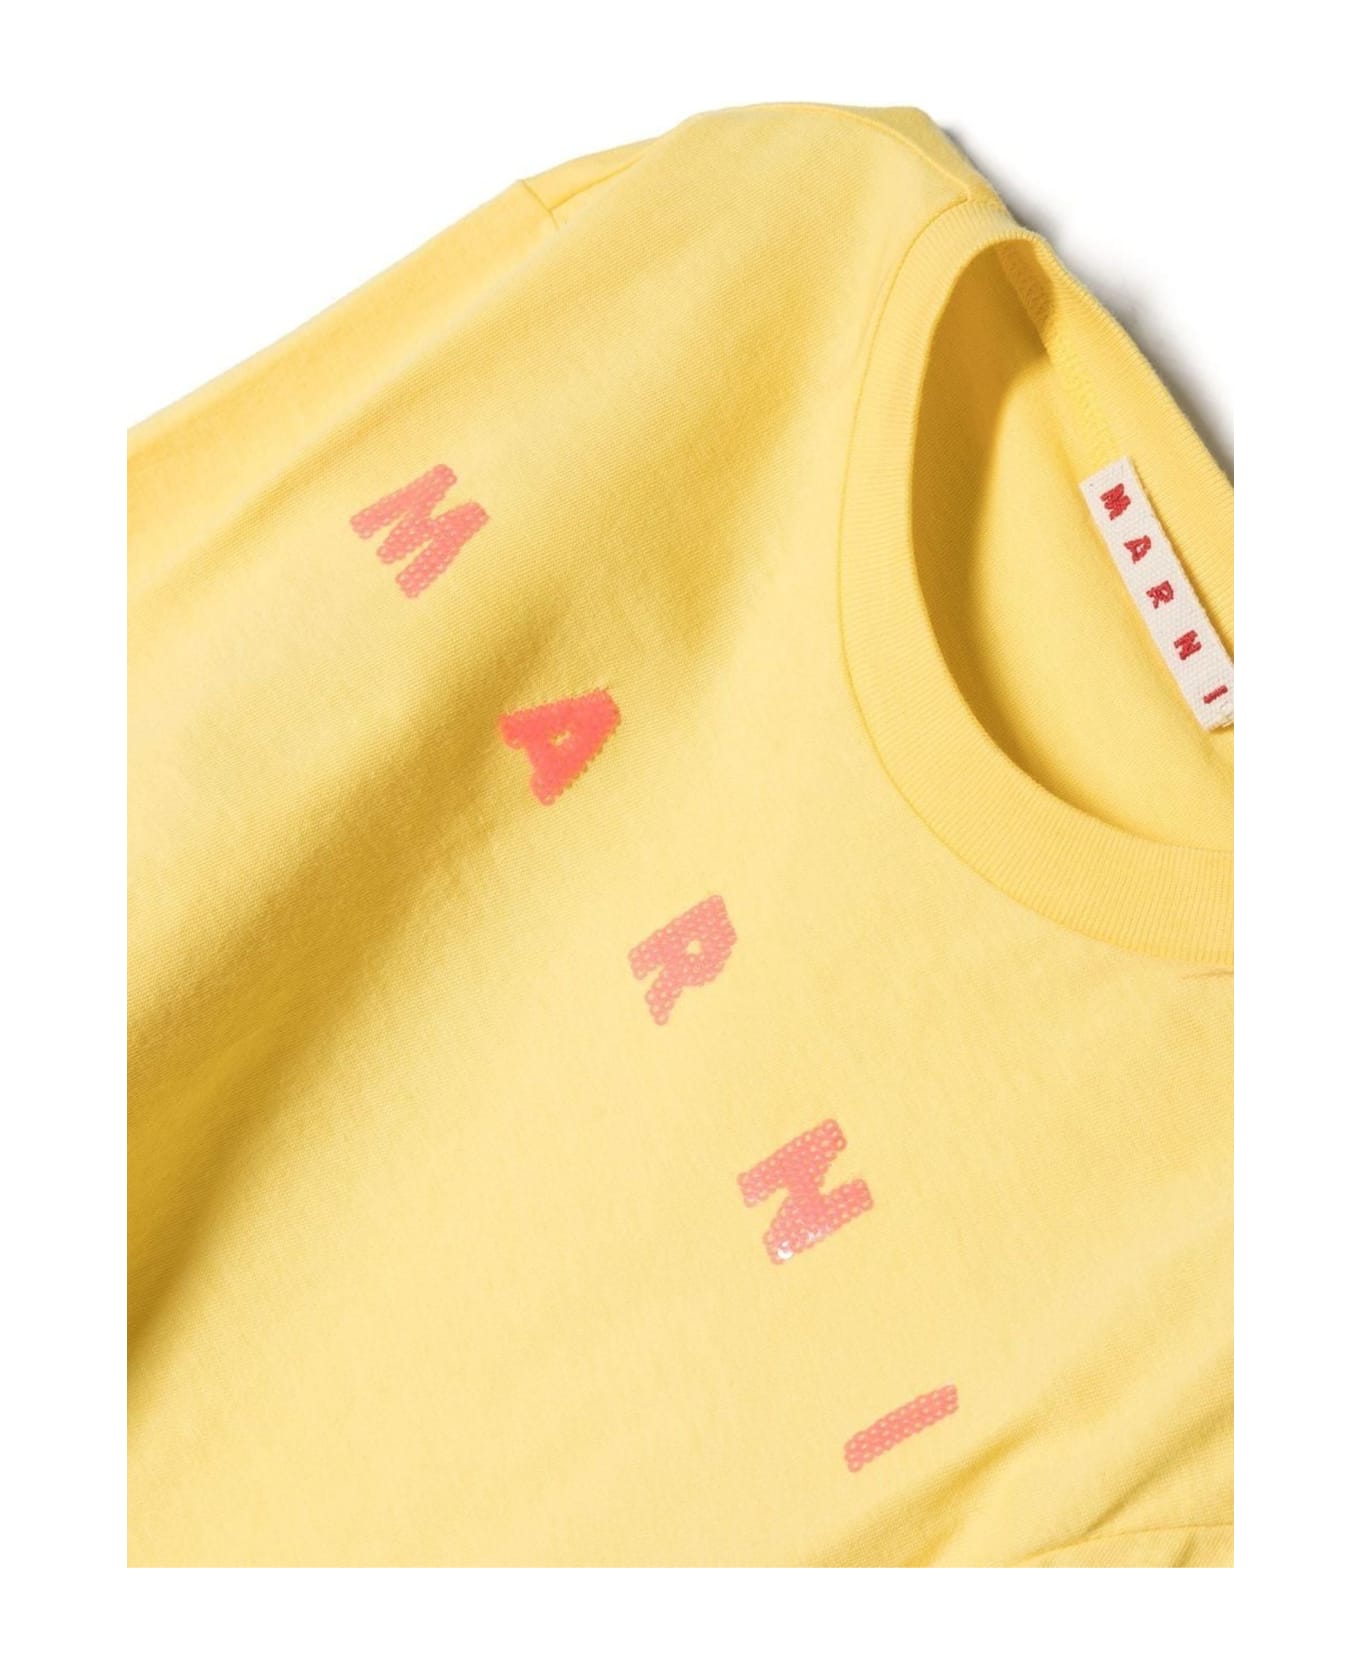 Marni Yellow Cotton Tshirt - Giallo